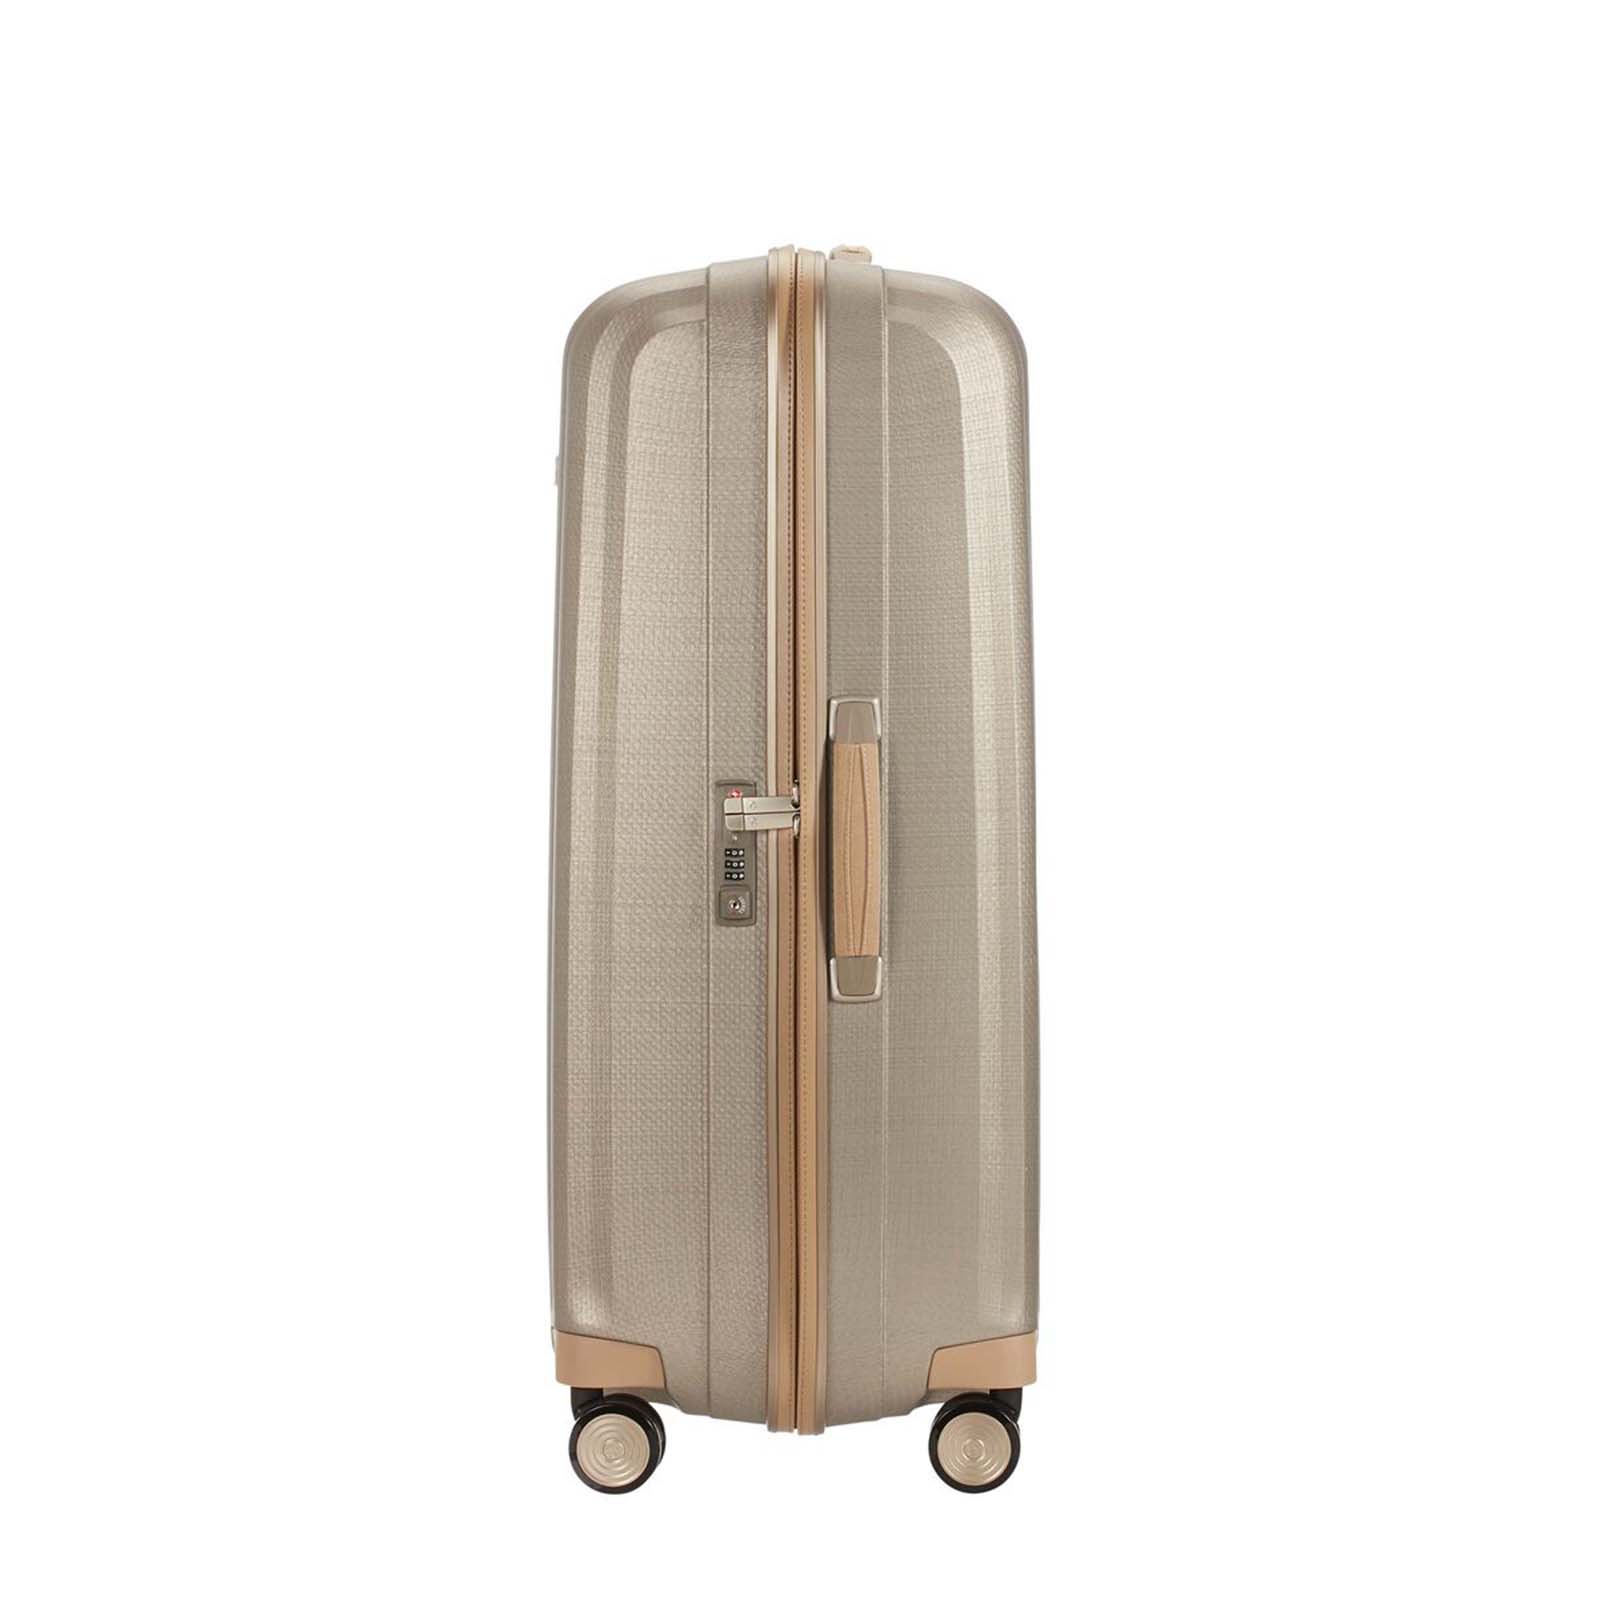 Samsonite-Lite-Cube-Prime-82cm-Suitcase-Ivory-Gold-Handle